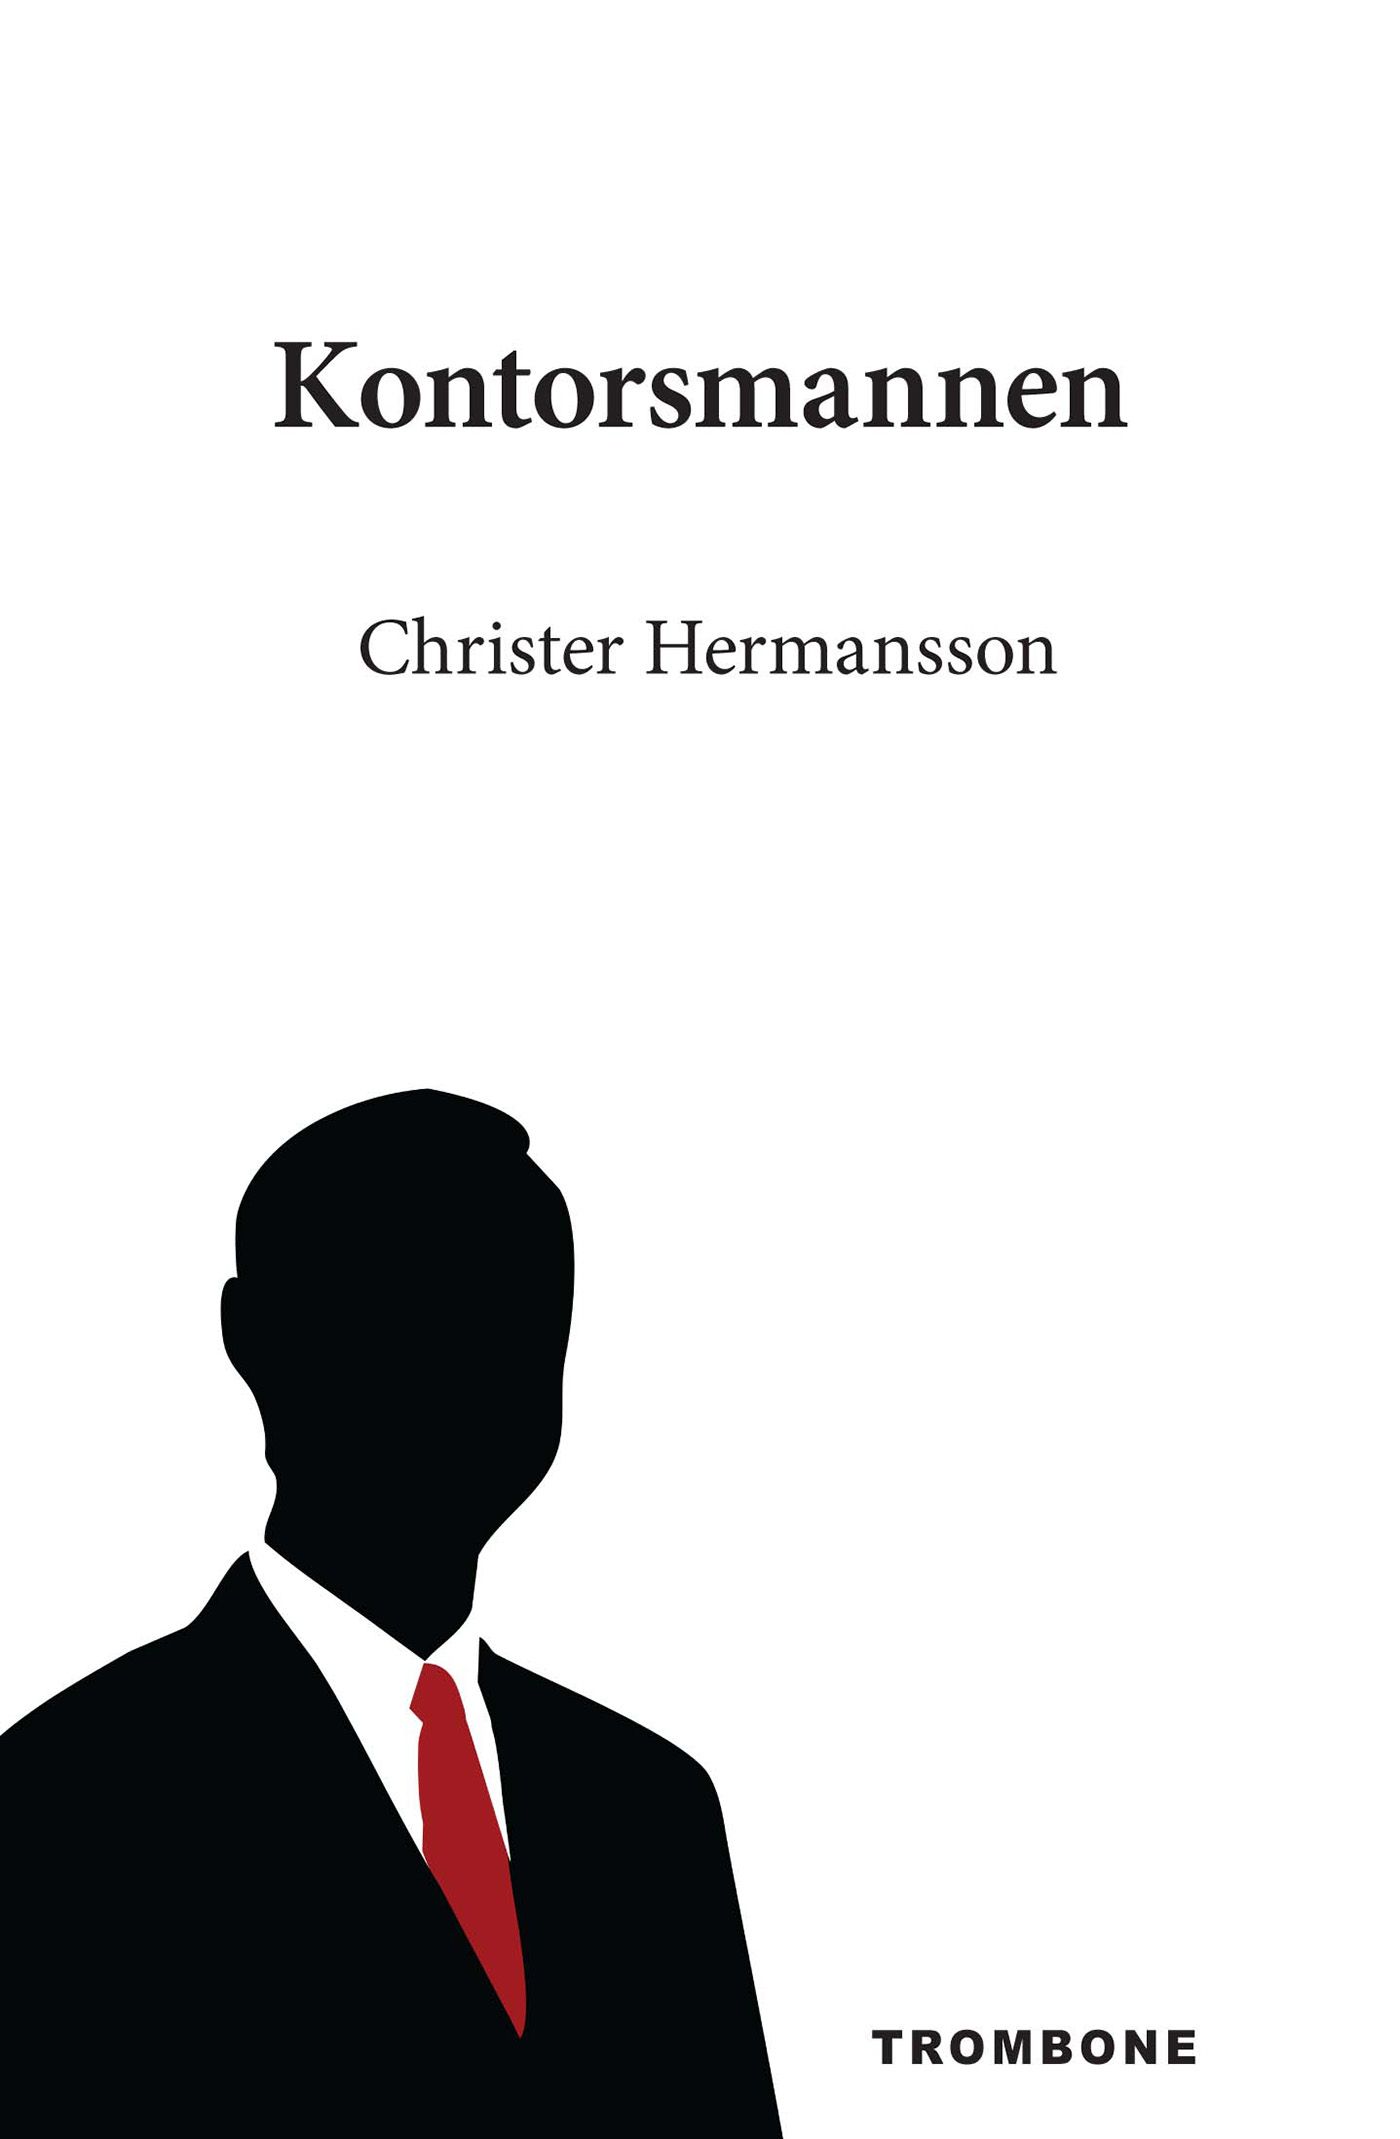 Kontorsmannen, e-bok av Christer Hermansson